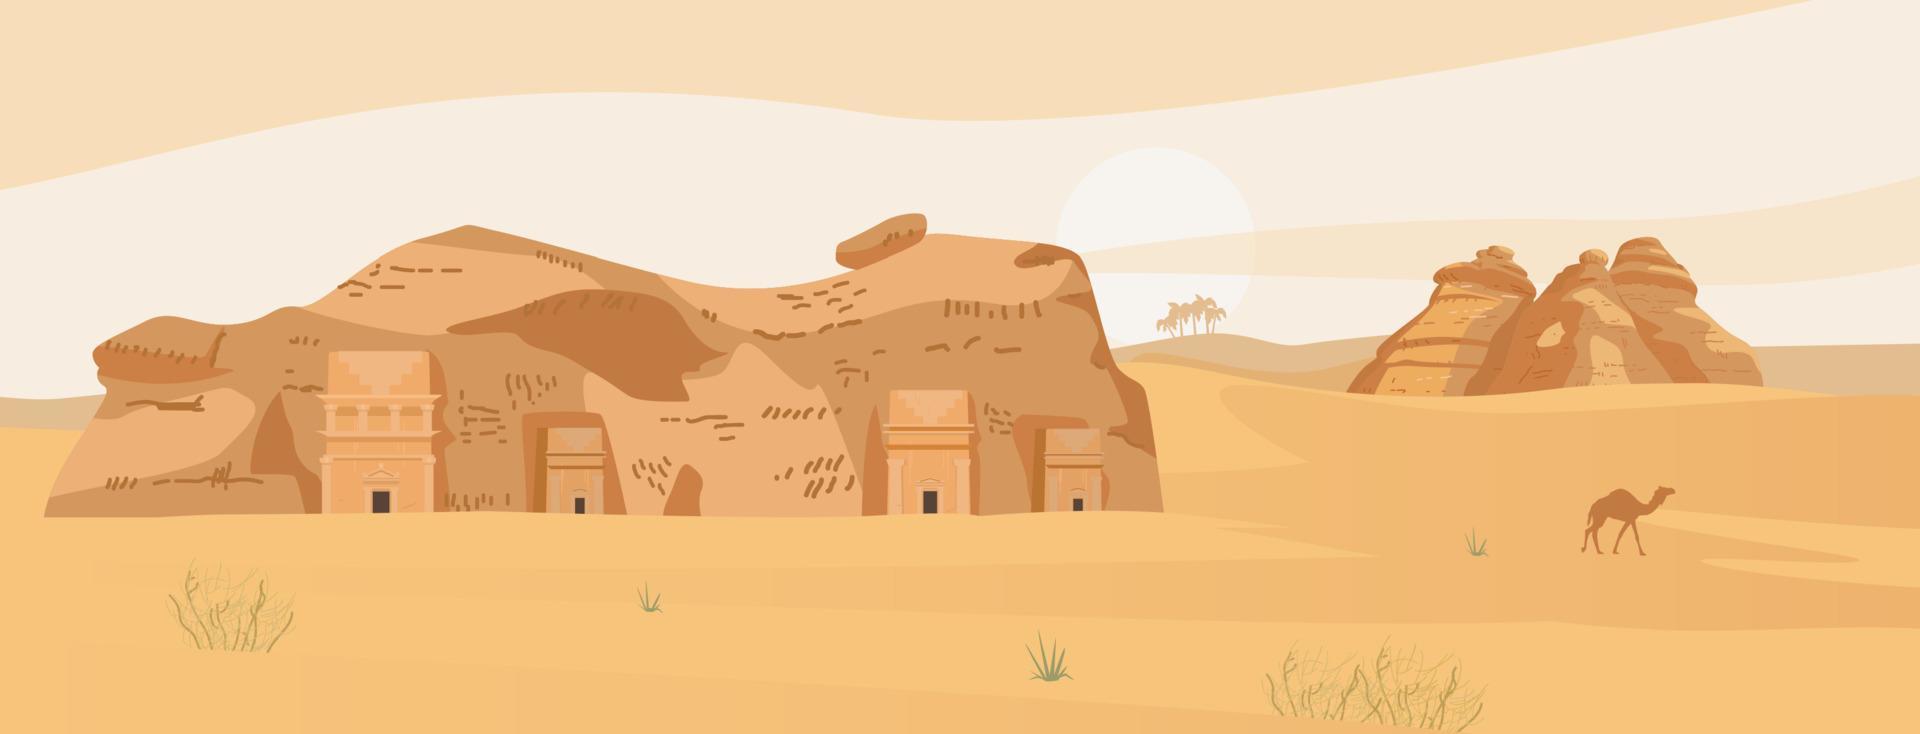 paisagem do deserto da arábia saudita com túmulos antigos de al ula. vila antiga de hegra. rochas de areia. ilustração vetorial plana. vetor